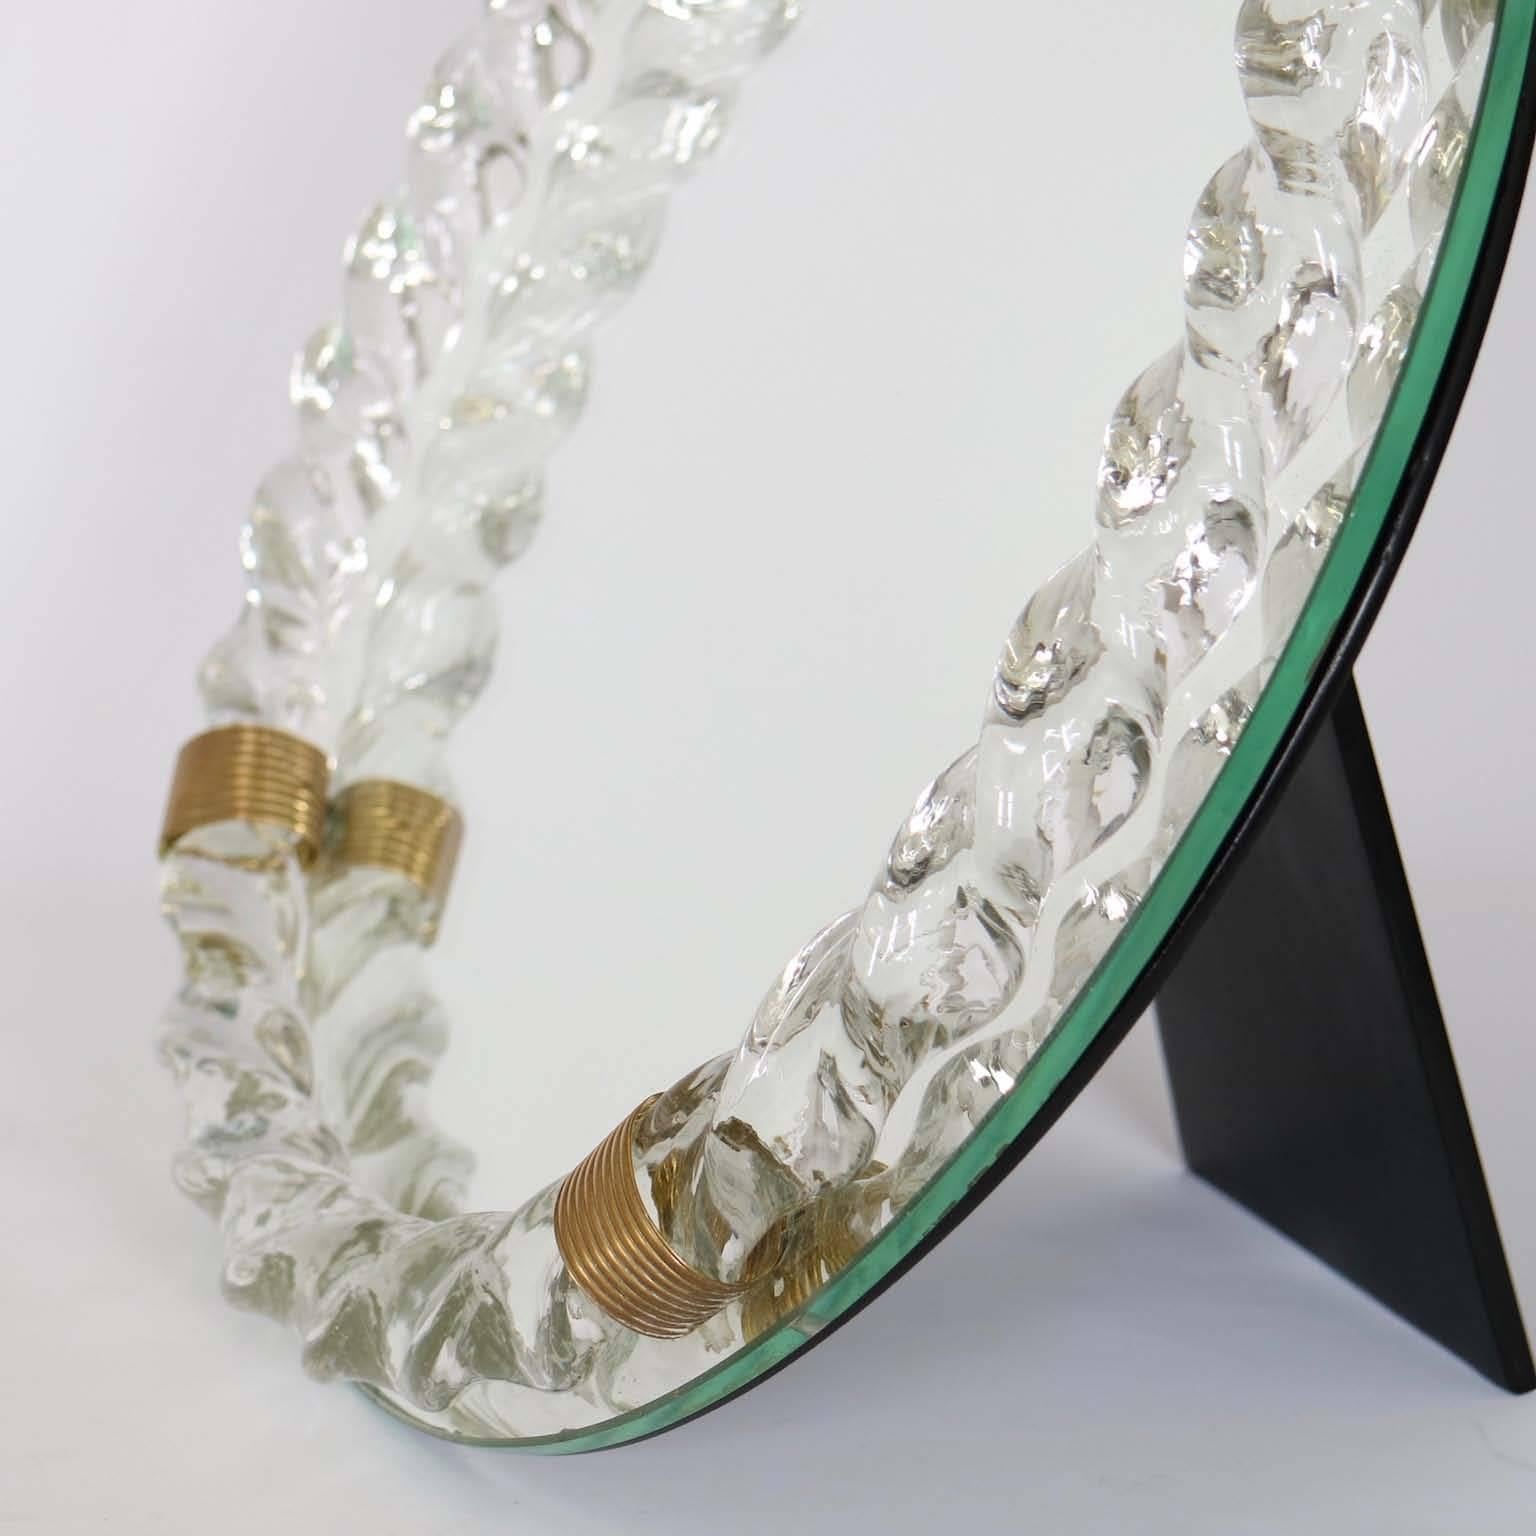 20th Century Venini Glass Table Mirror, Design Attributed to Gio Ponti